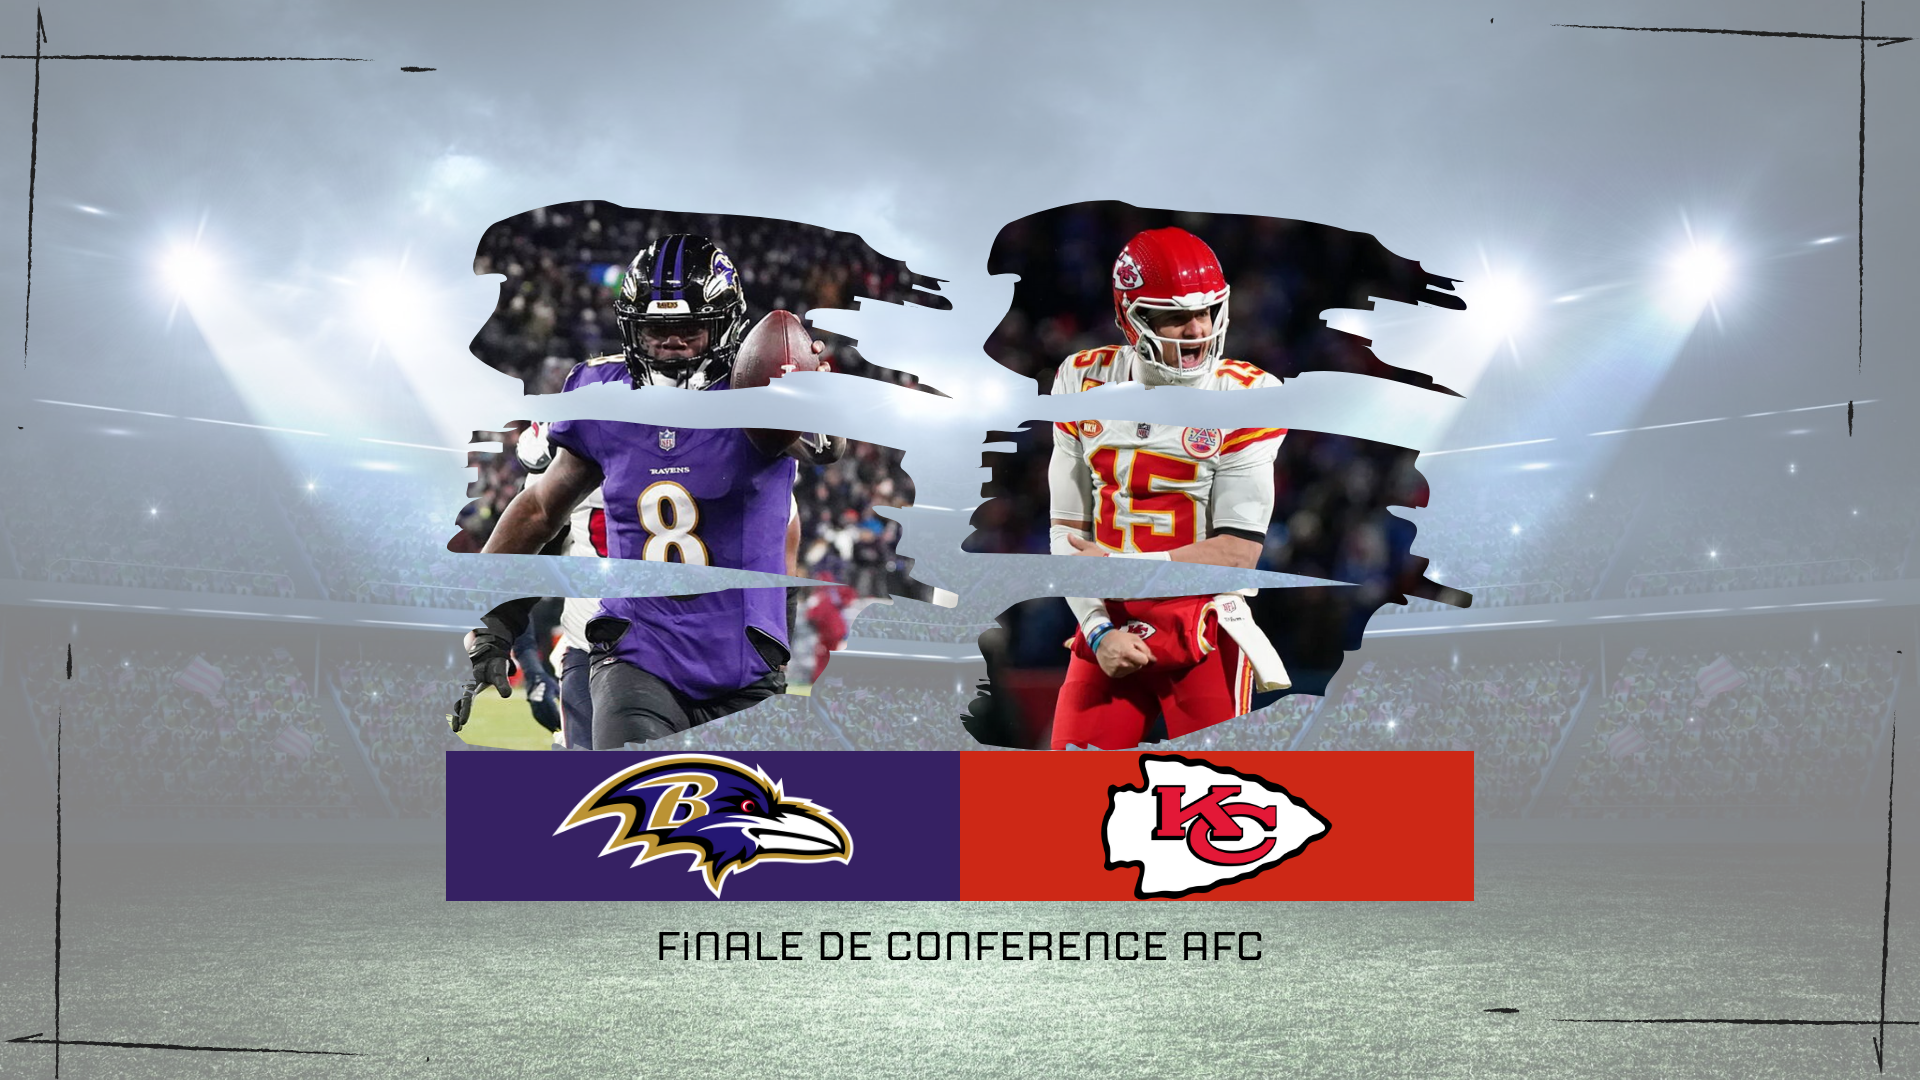 NFL – Présentation de la finale de conférence AFC entre les Ravens et les Chiefs